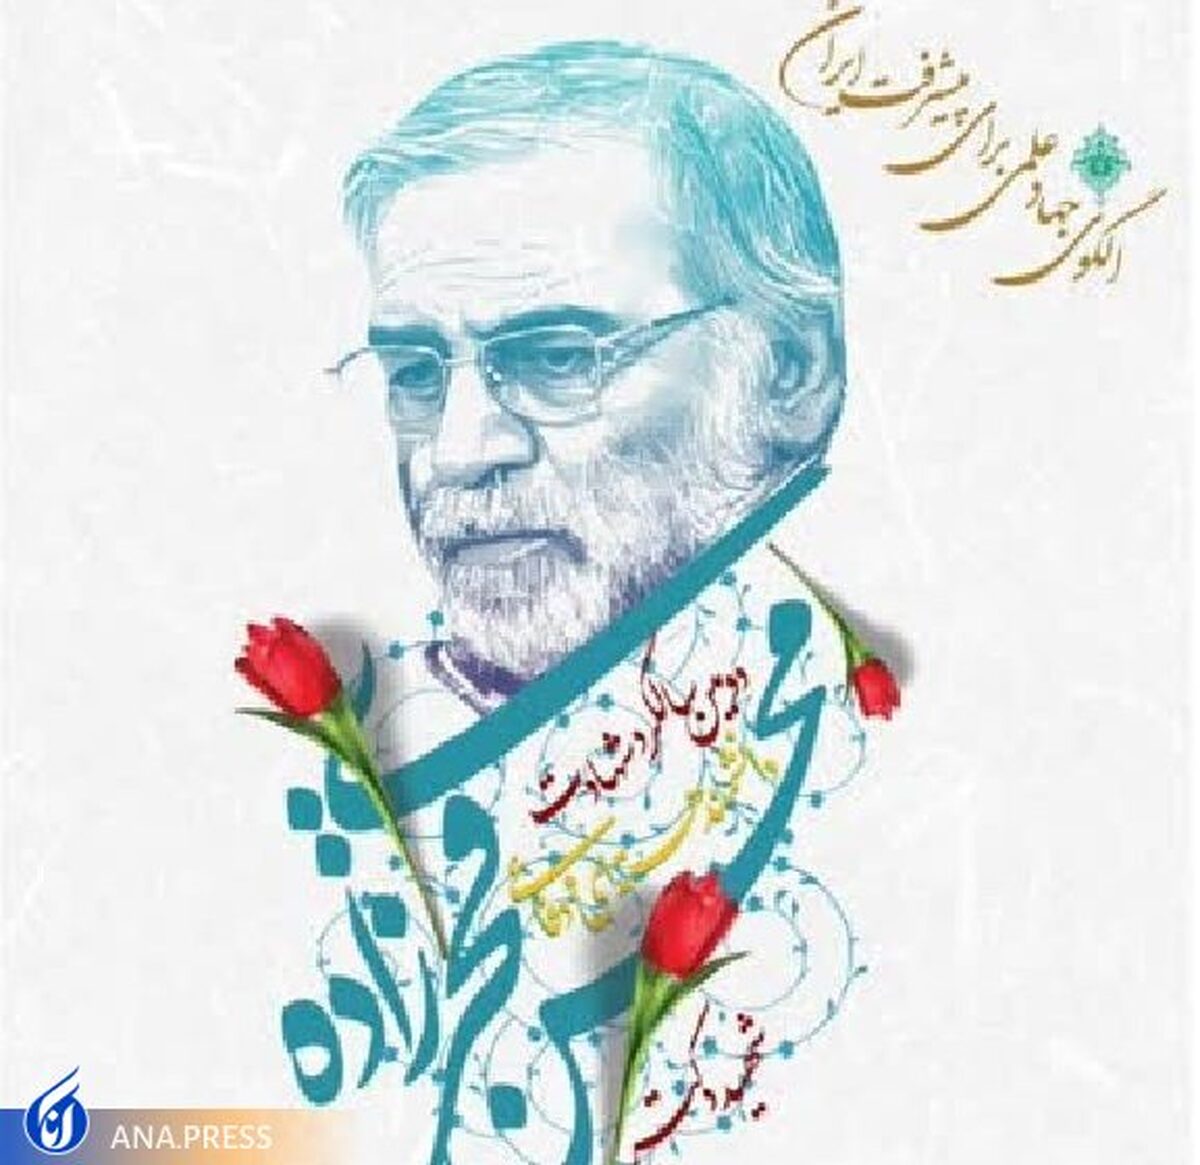 محفل شعر فخر ایران برگزار شد